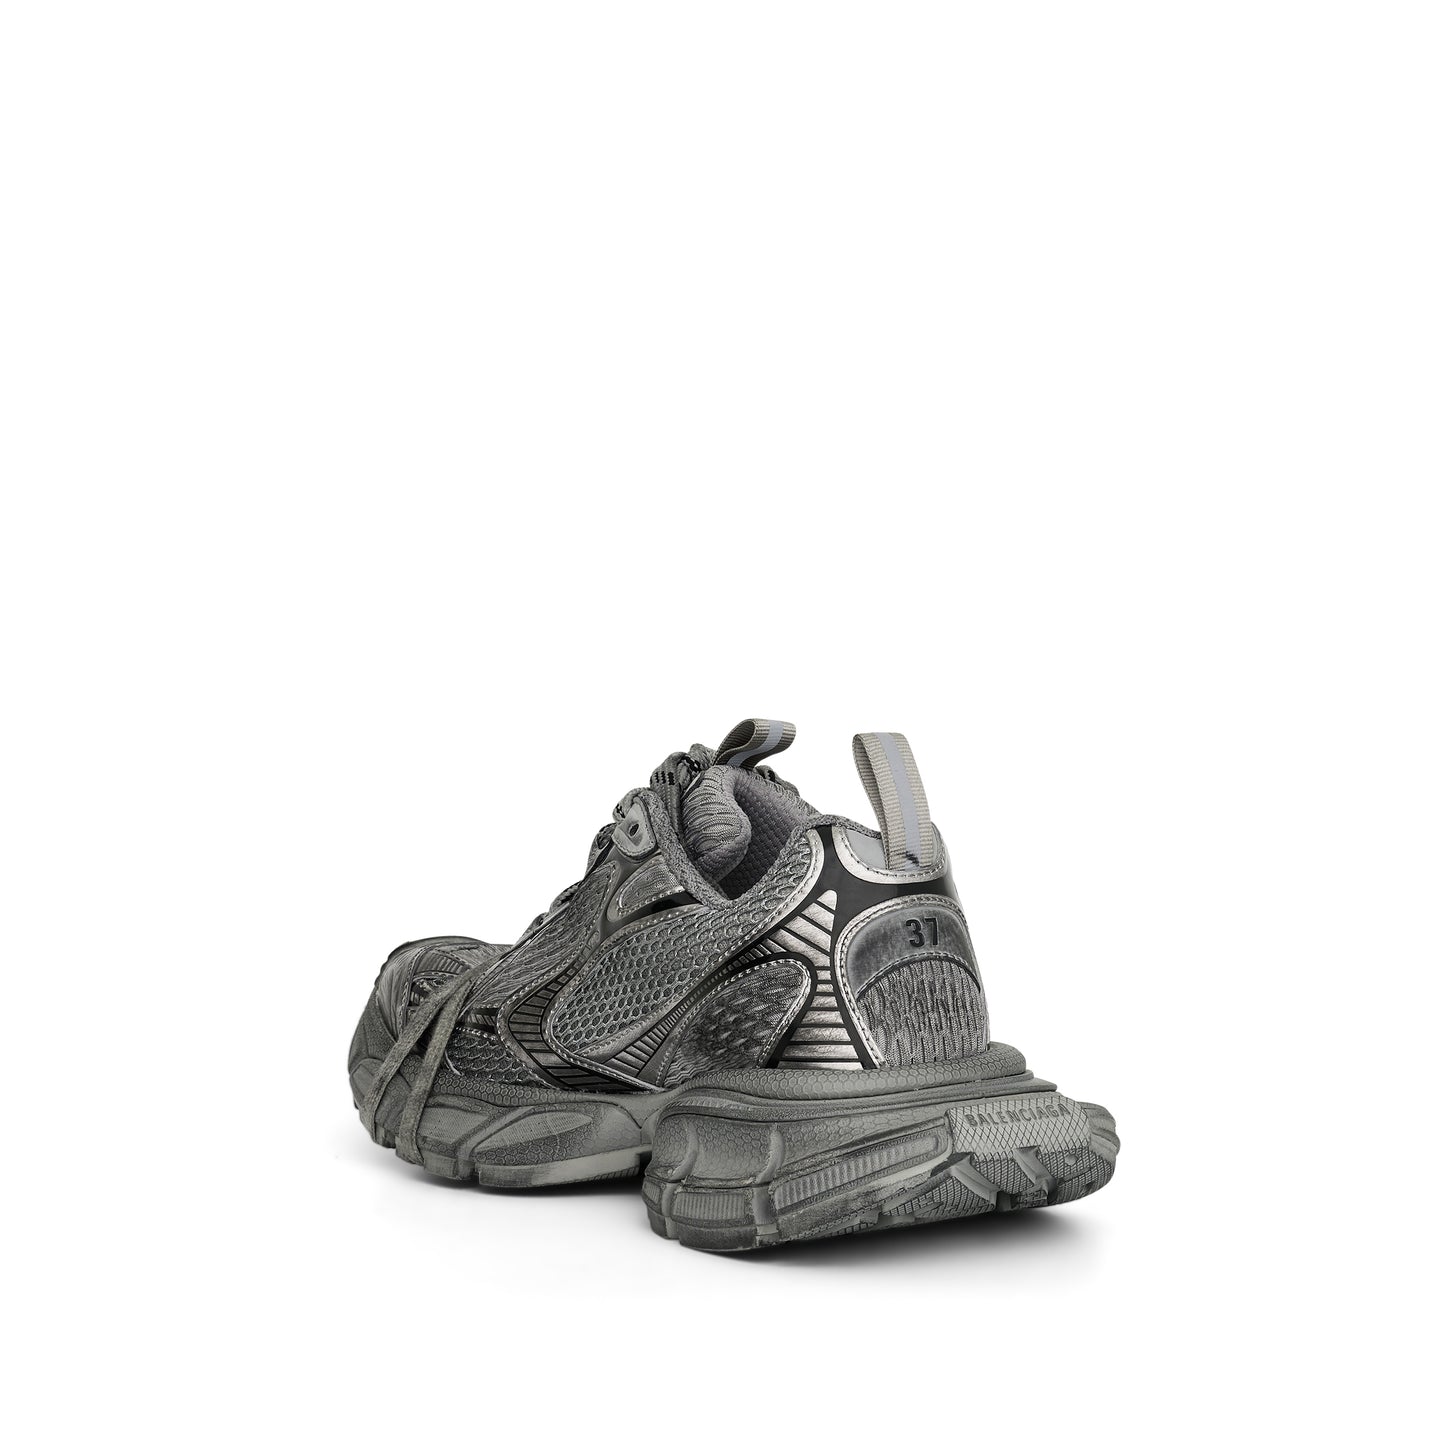 3XL Sneakers in Grey/Black